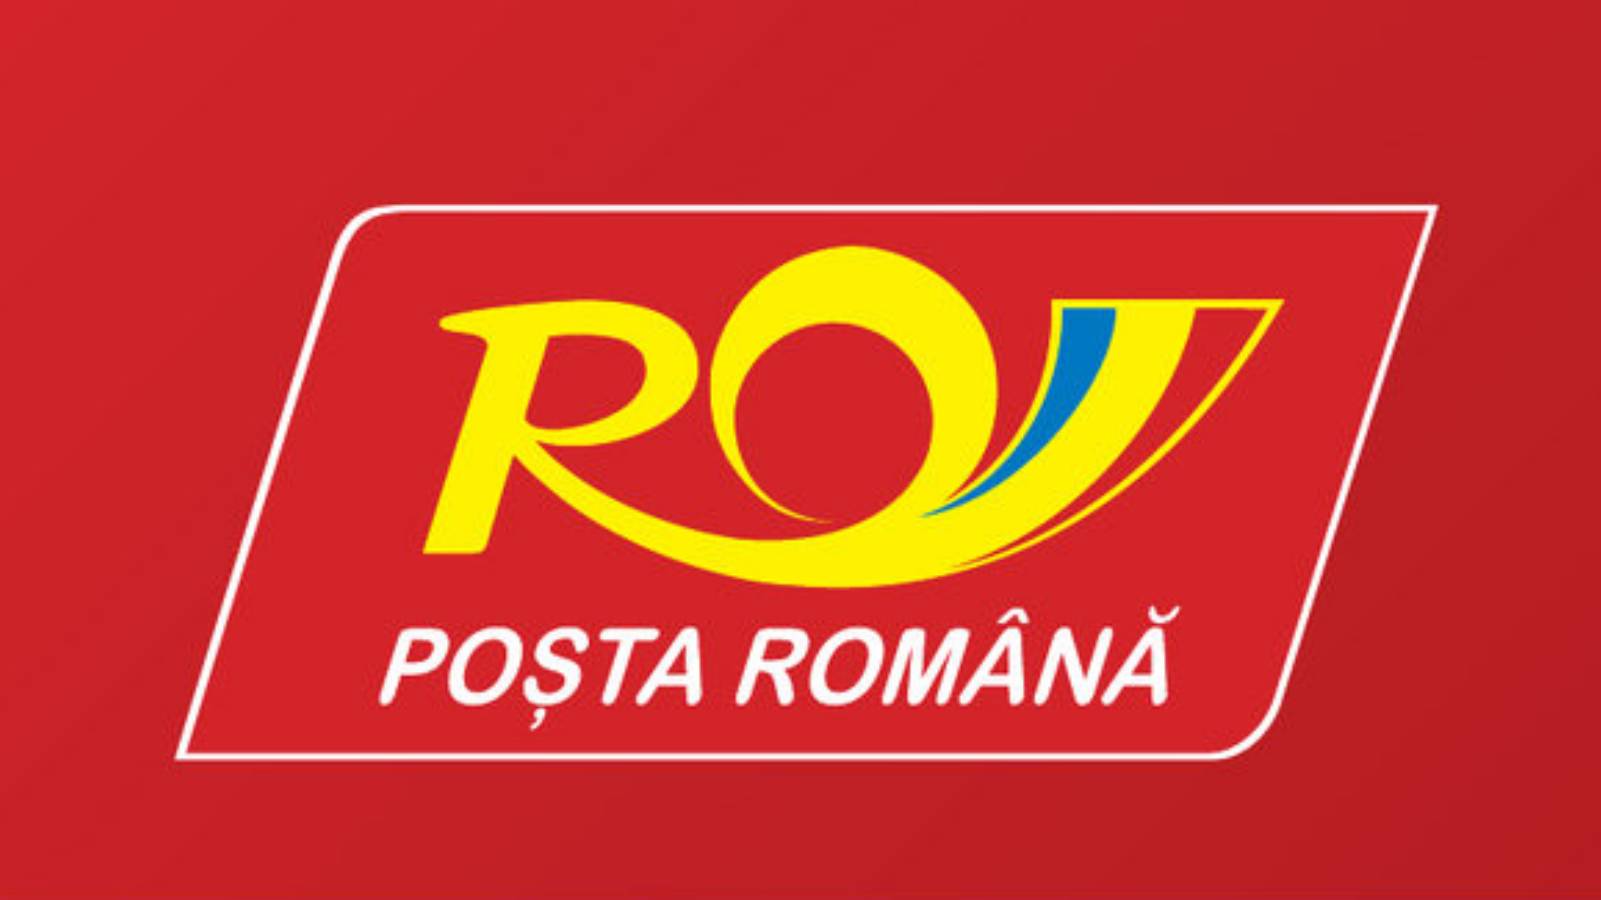 The Romanian Post Coronavirus